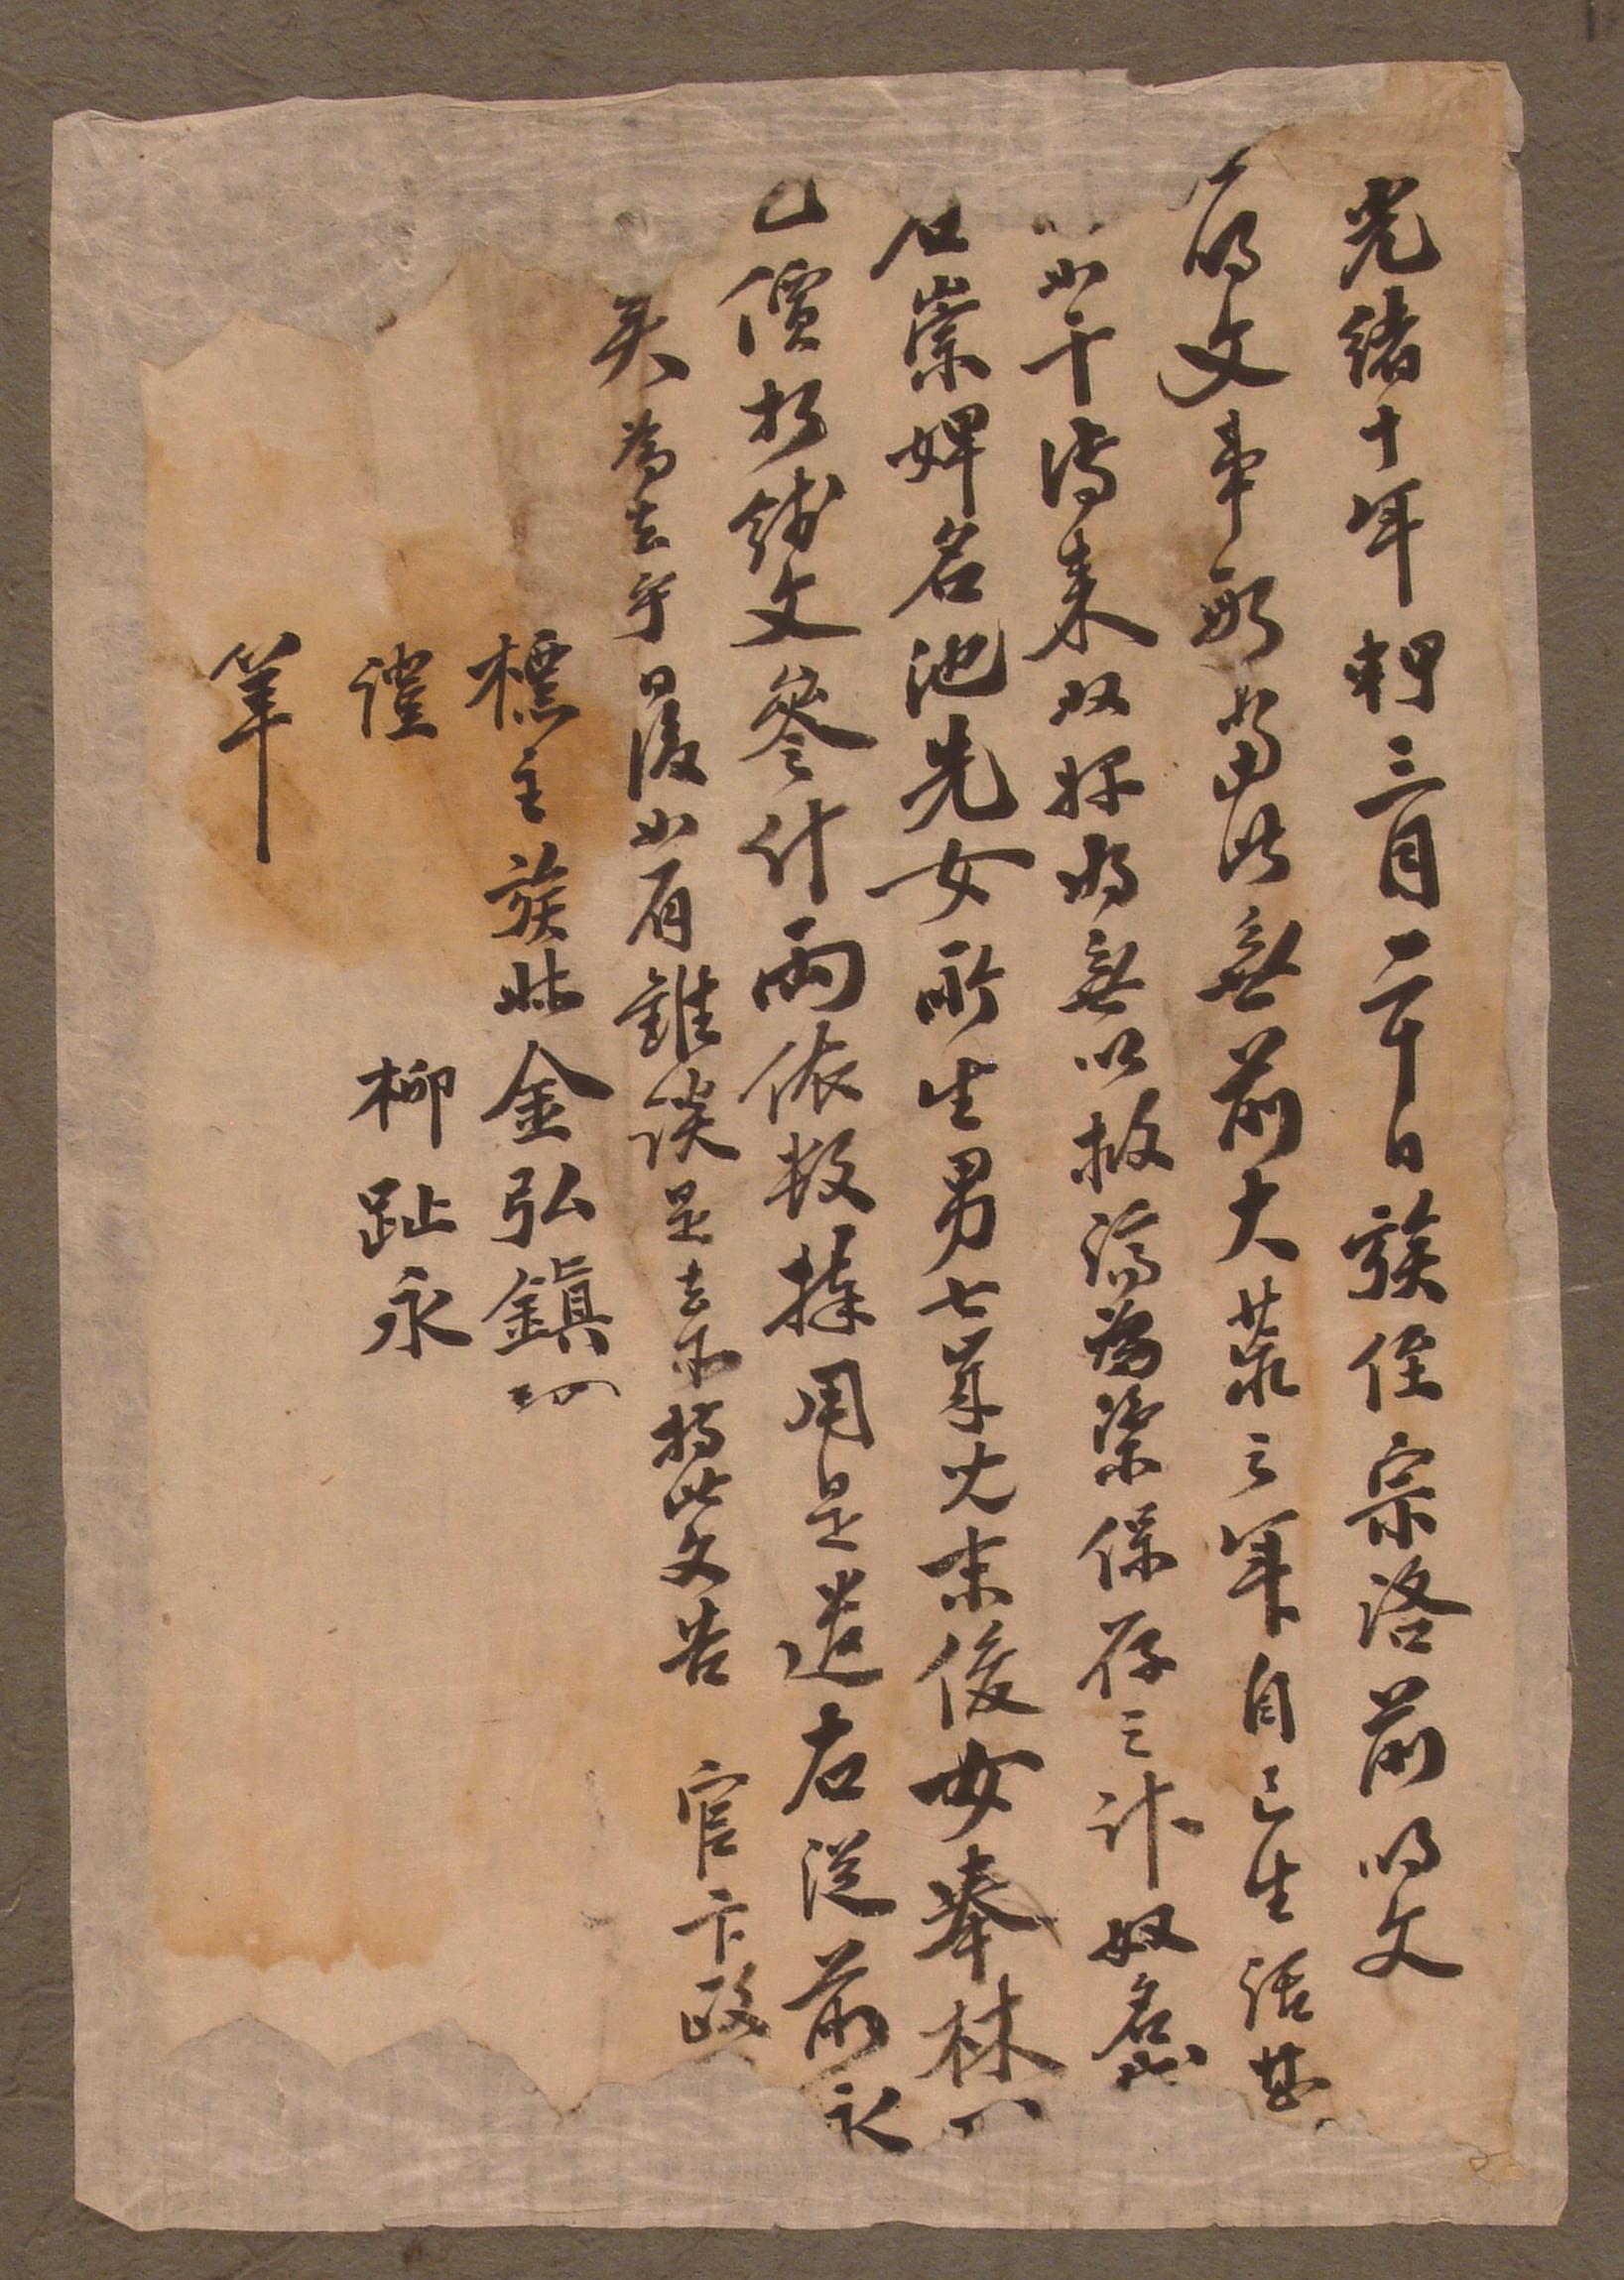 김홍진(金弘鎭)이 1884년에 작성한 노비 방매문기